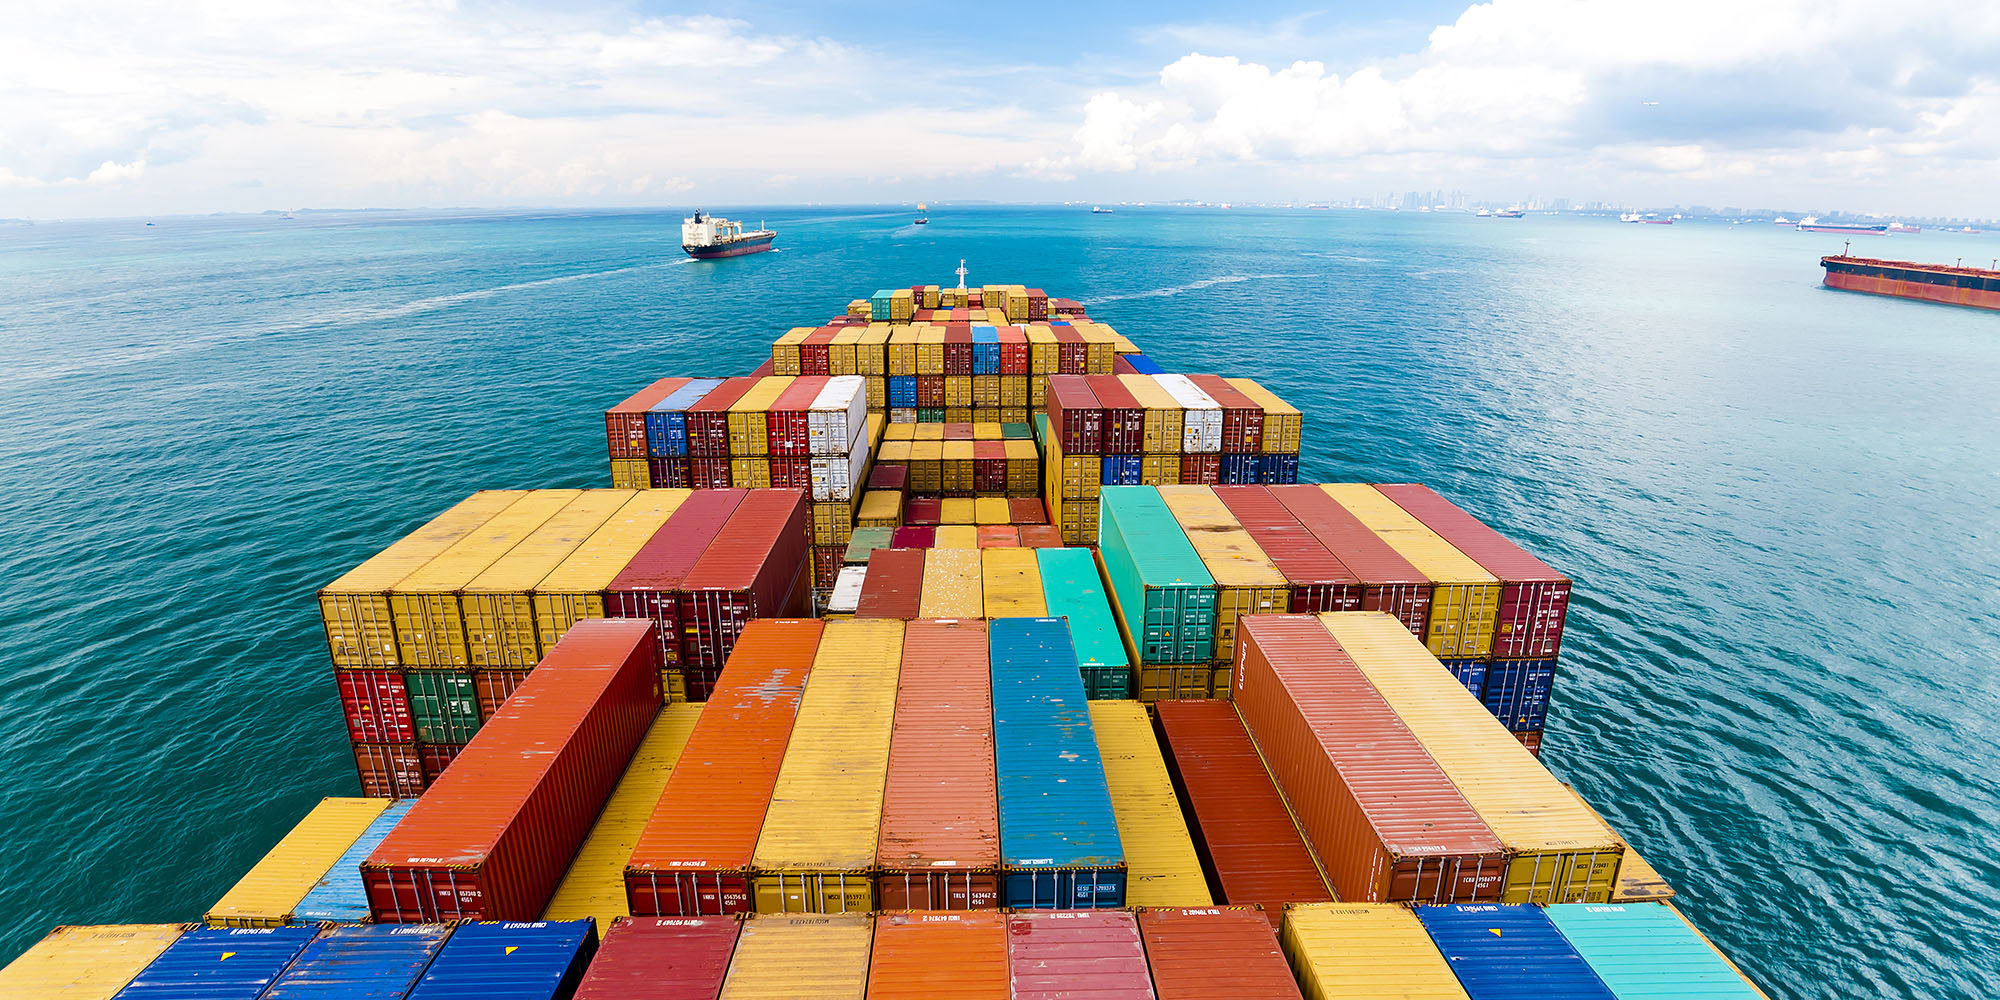 Containertransport in de haven is ontzettend belangrijk